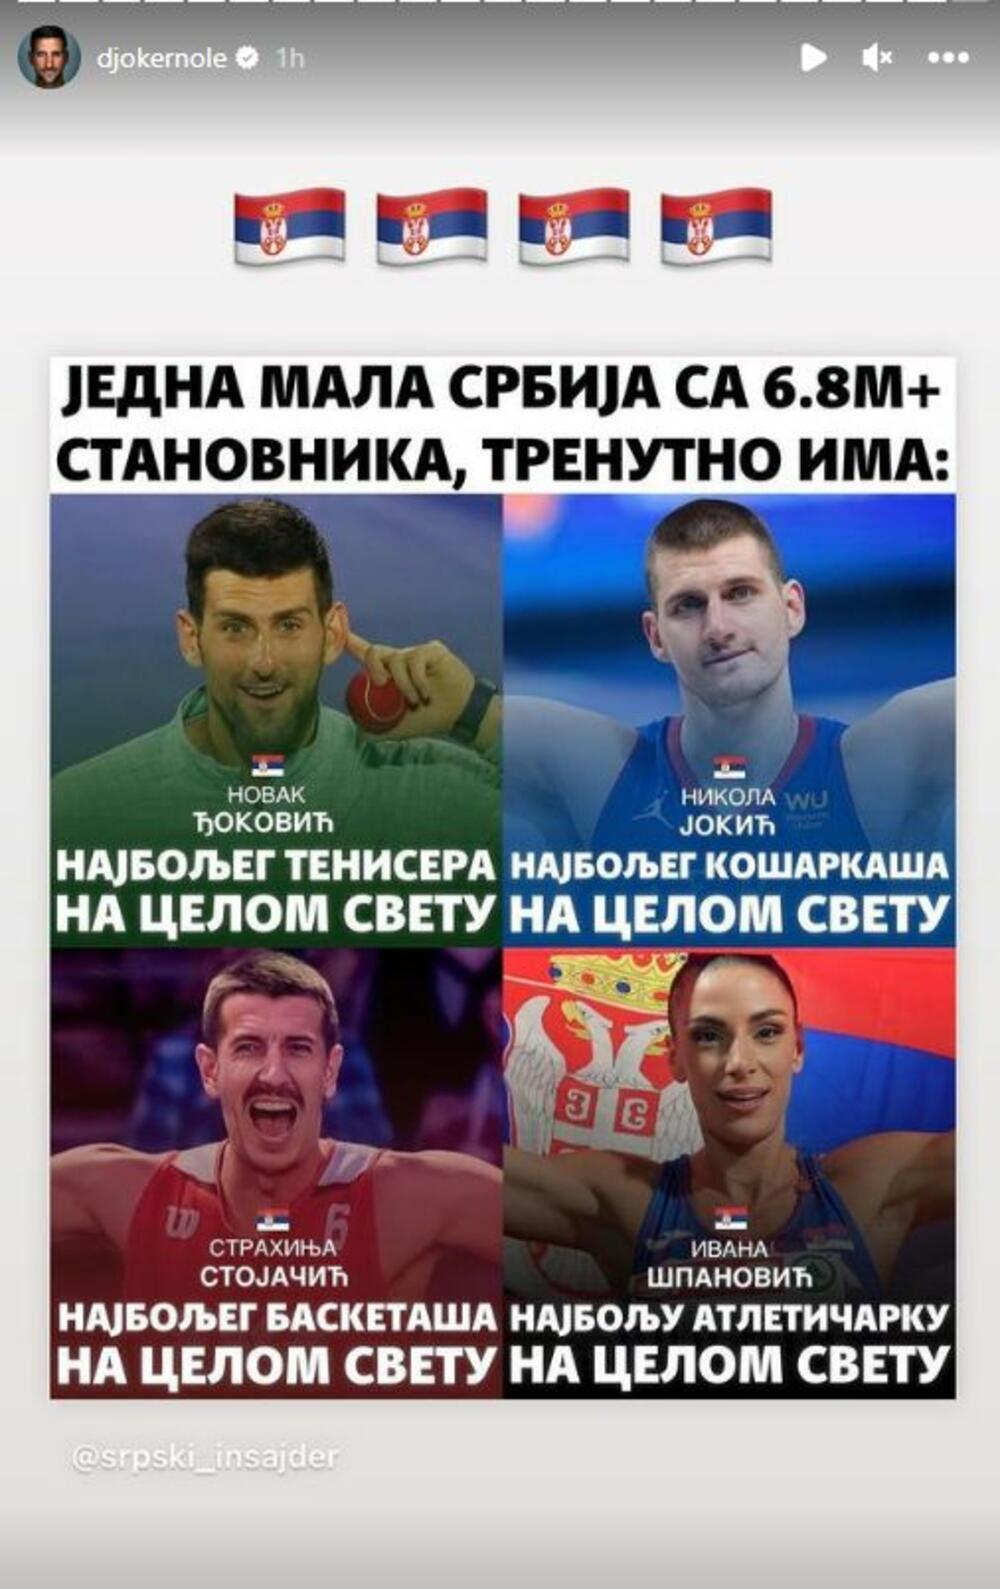 Najuspešniji sportisti su iz Srbije.